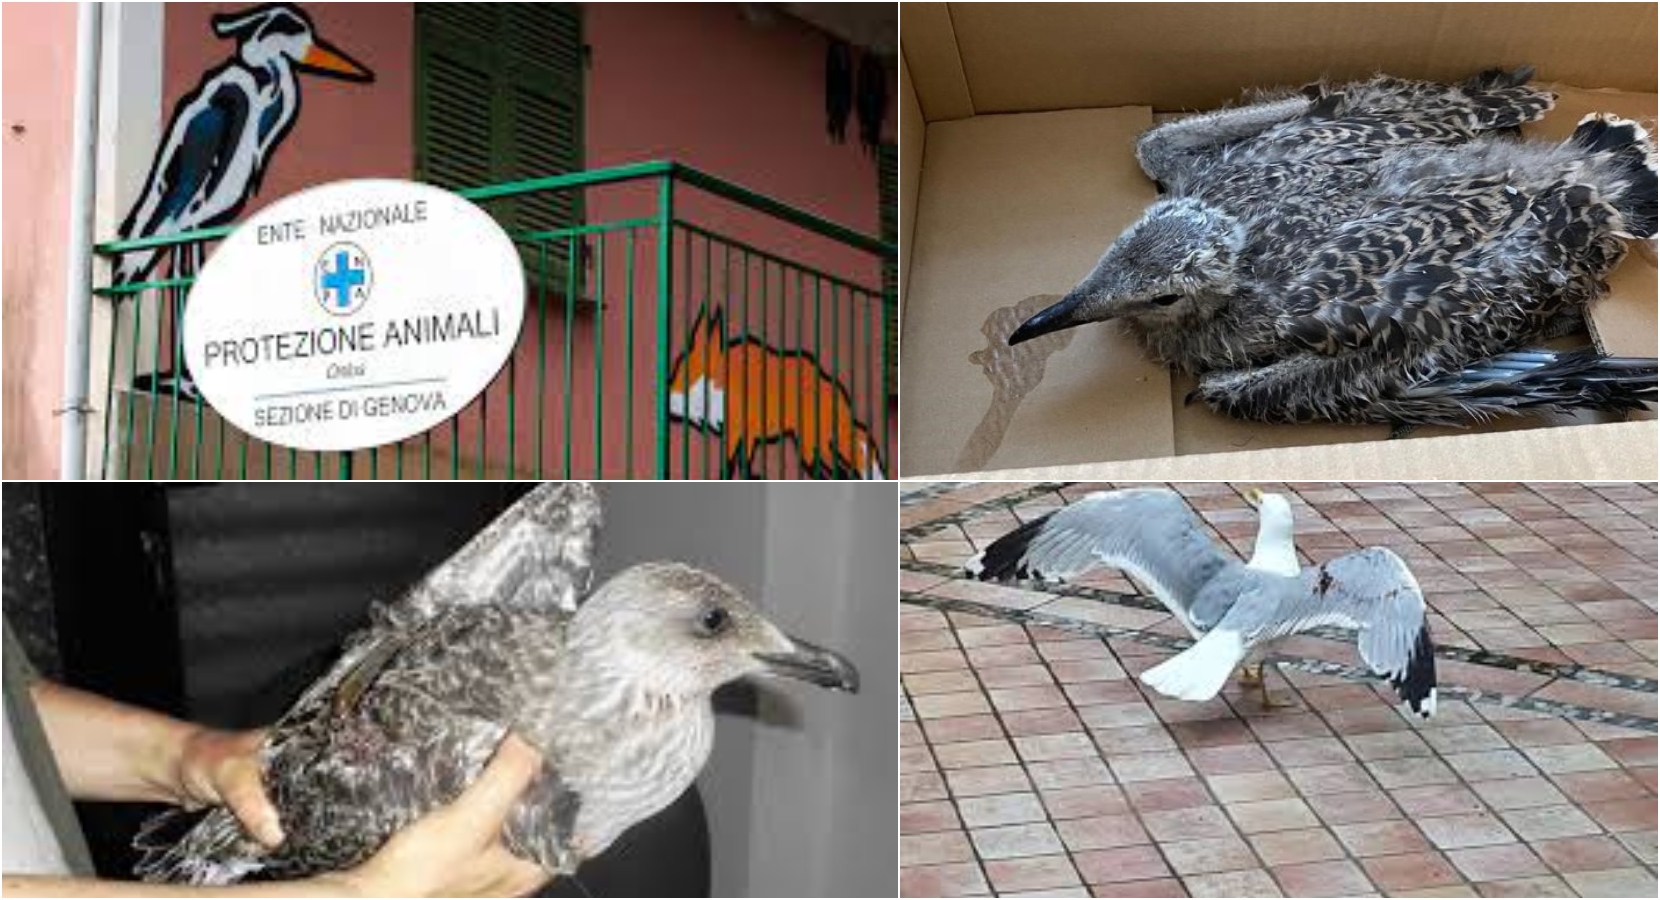 Genova, sos aviaria: vietato ricoverare i gabbiani feriti